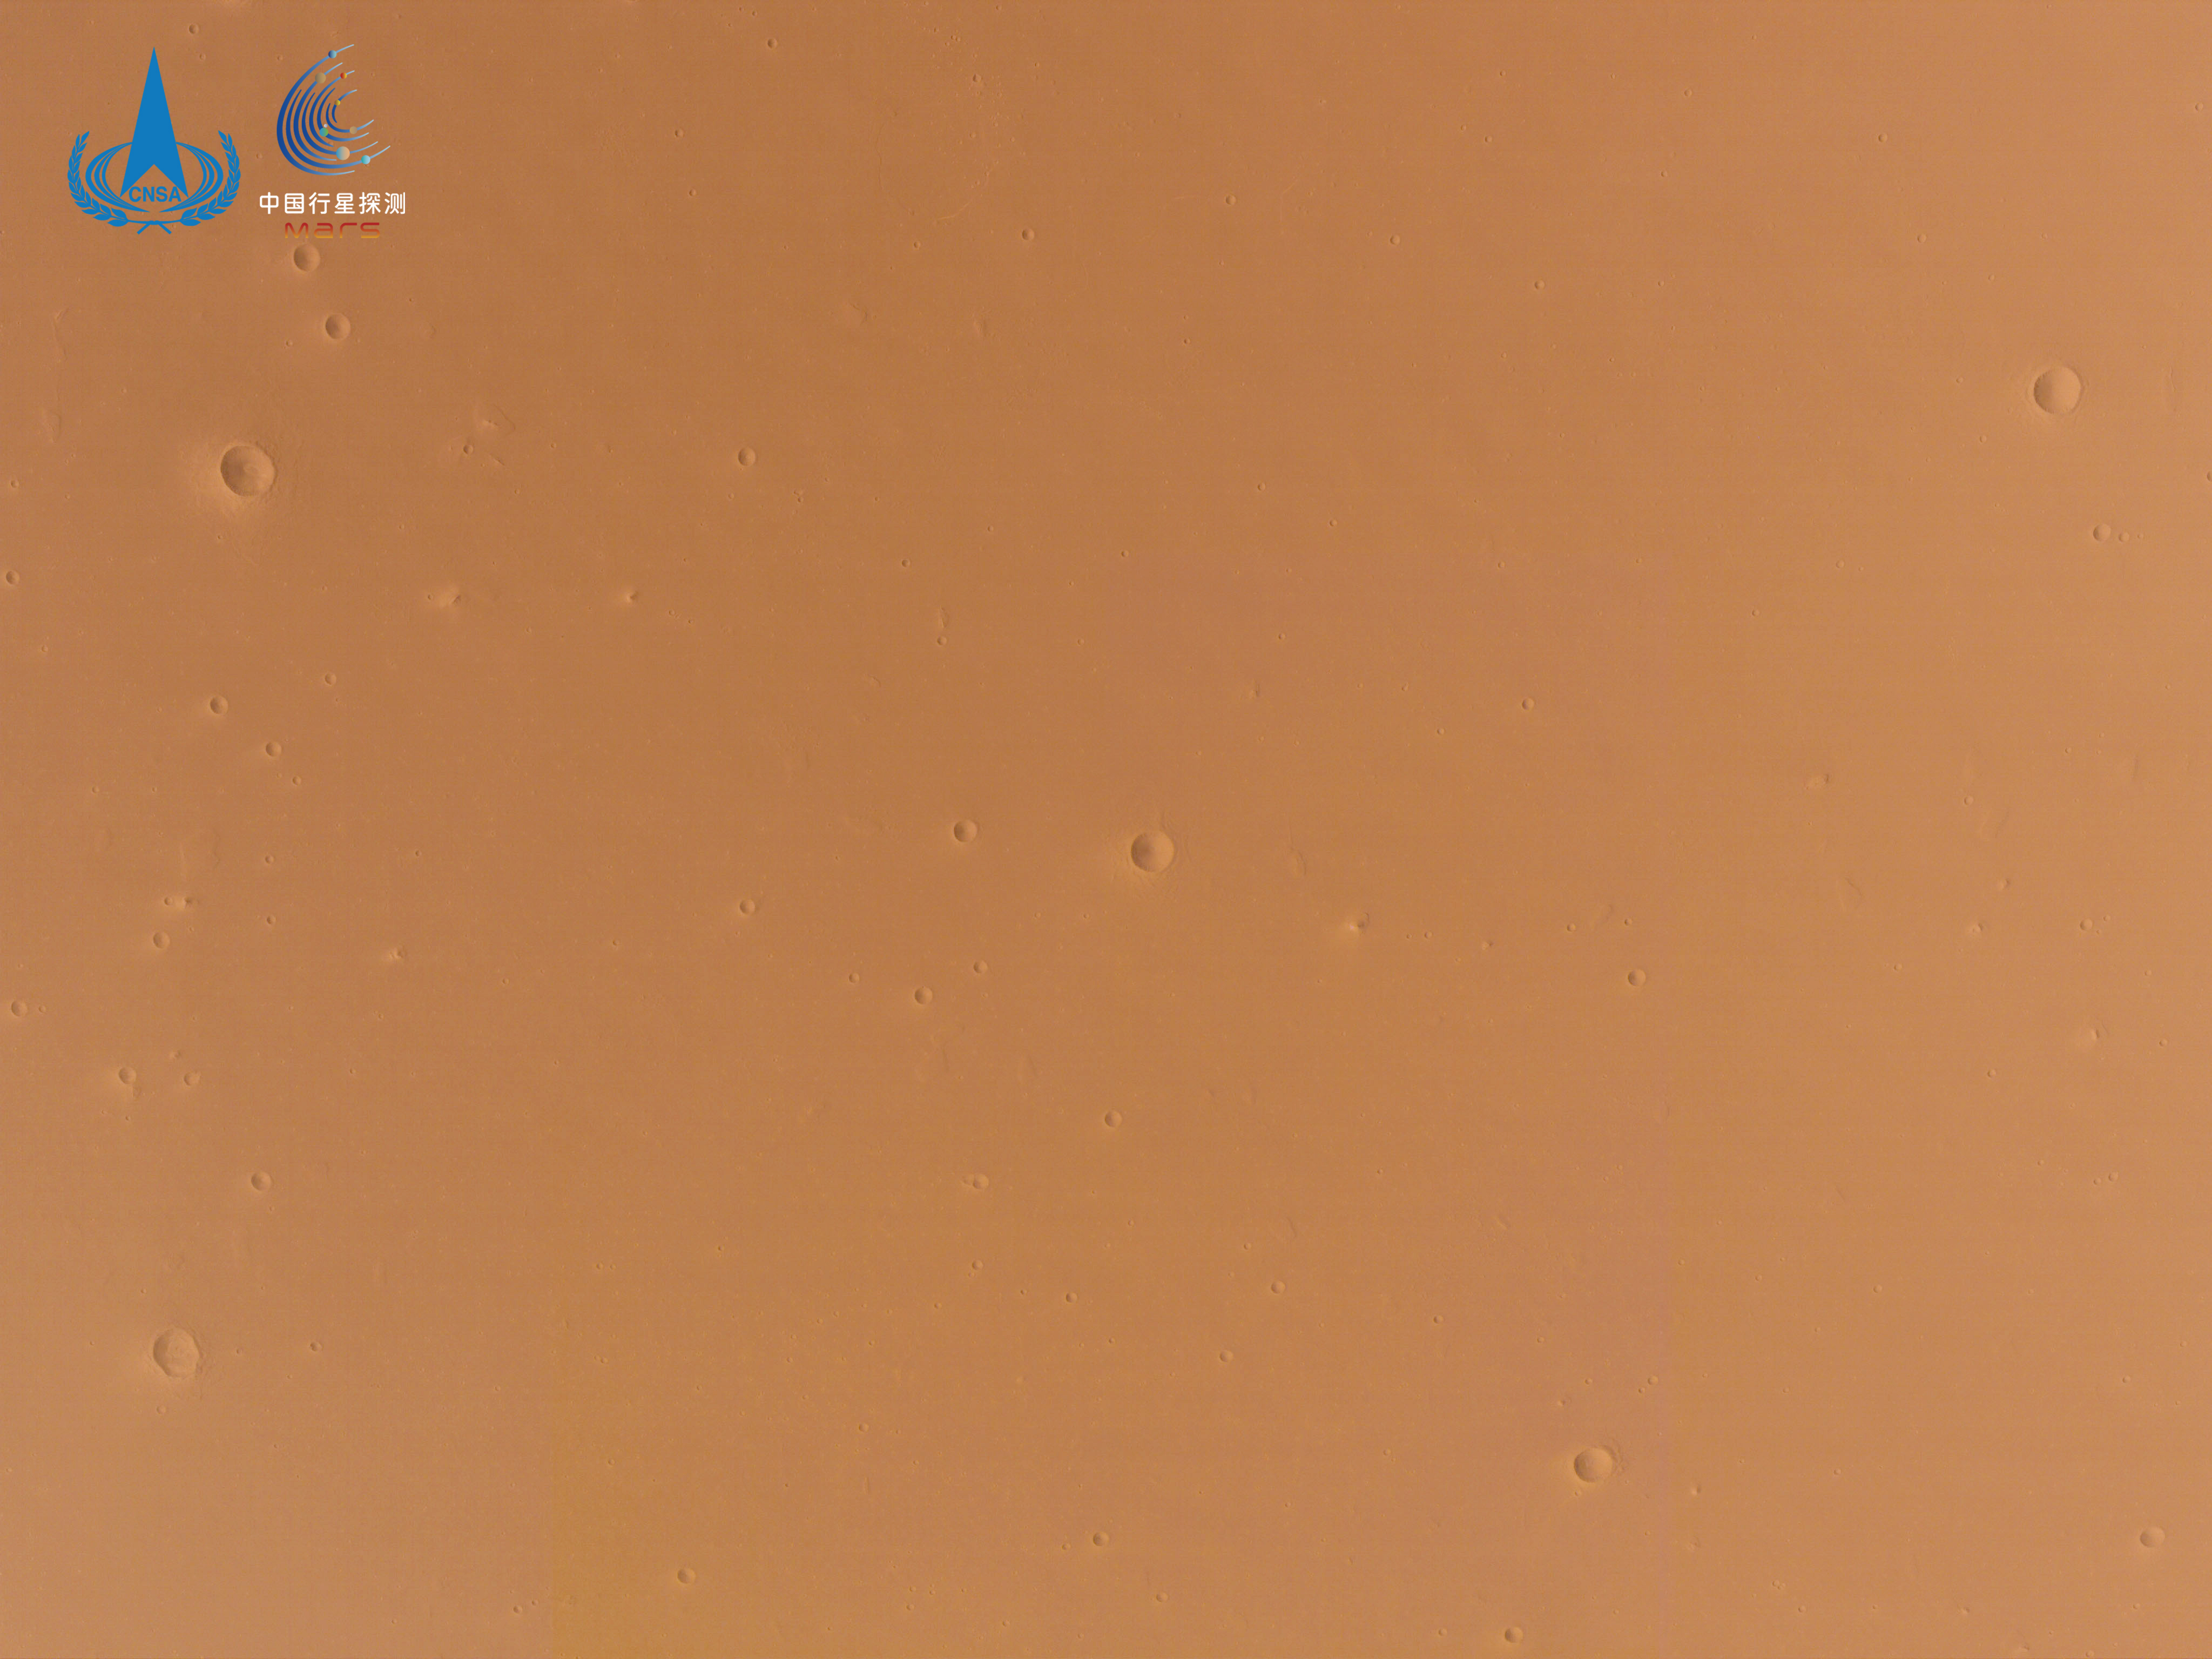 天問一號傳回火星巡視區高解析度影像